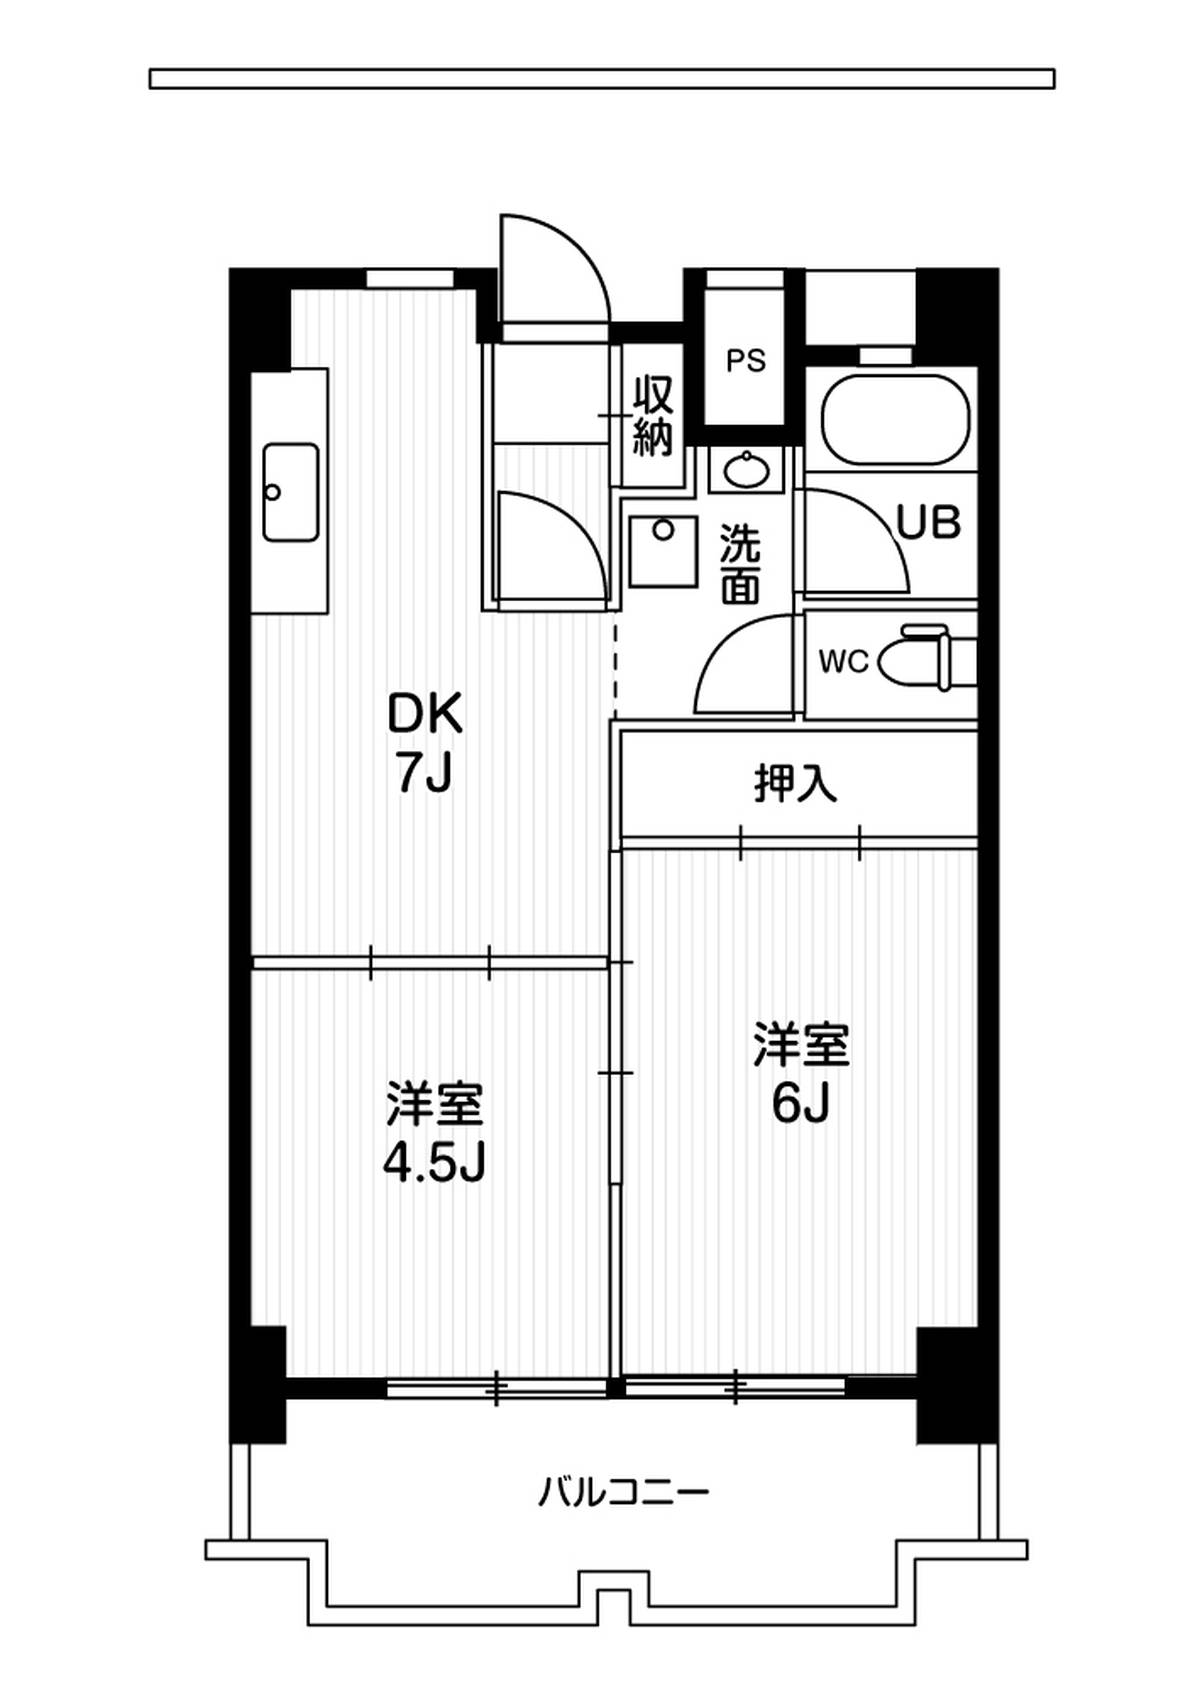 Sơ đồ phòng 2DK của Village House Ichinomiya Tower ở Ichinomiya-shi